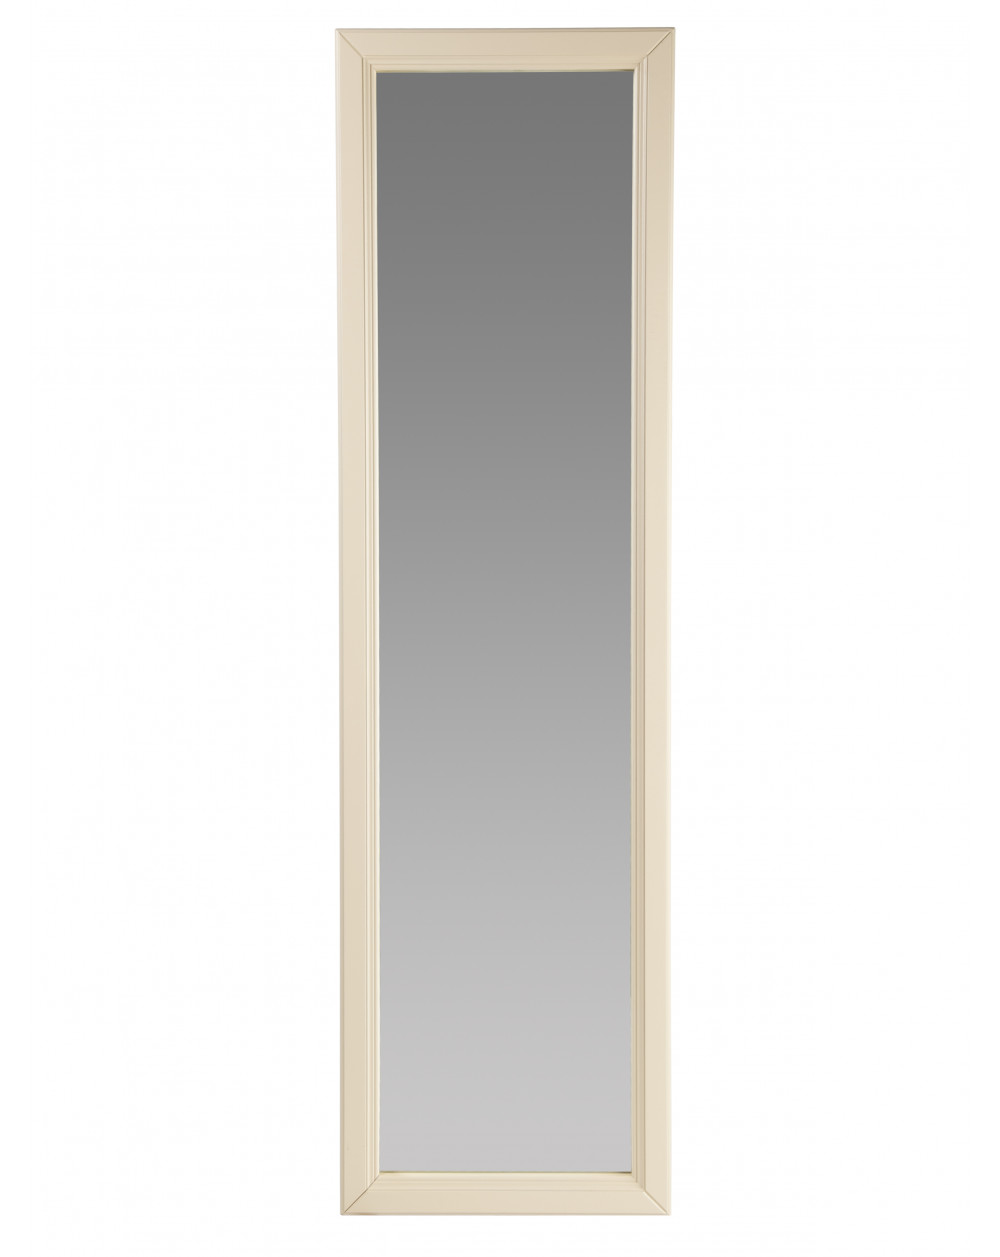 Зеркало настенное Селена слоновая кость 116 см х 33,7 см Мебелик фото